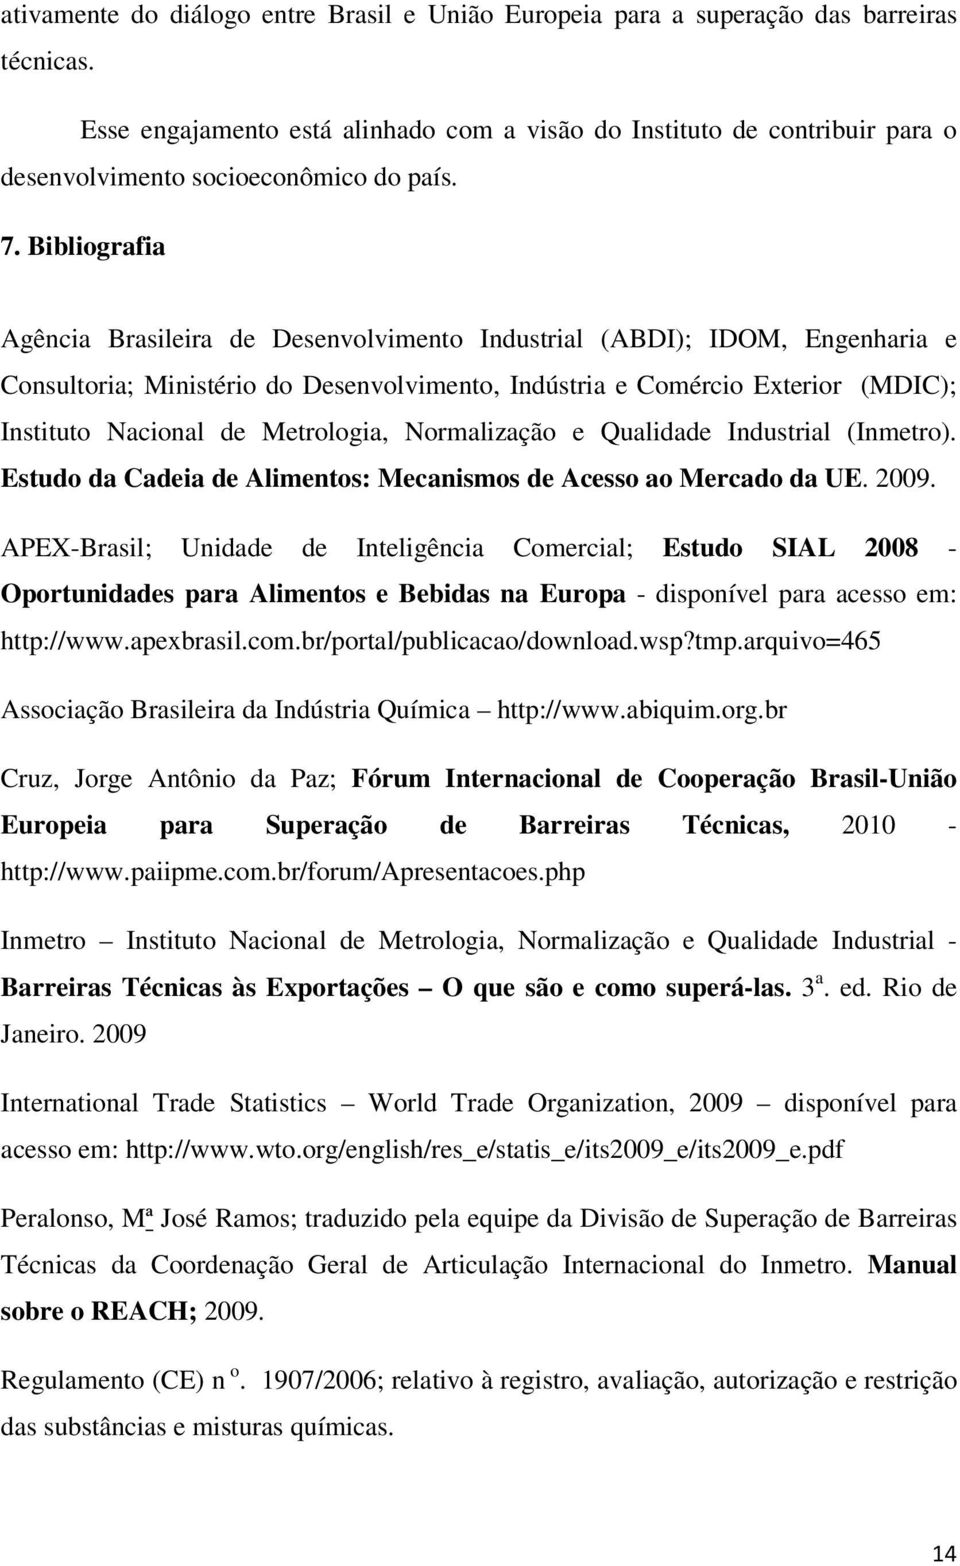 Bibliografia Agência Brasileira de Desenvolvimento Industrial (ABDI); IDOM, Engenharia e Consultoria; Ministério do Desenvolvimento, Indústria e Comércio Exterior (MDIC); Instituto Nacional de